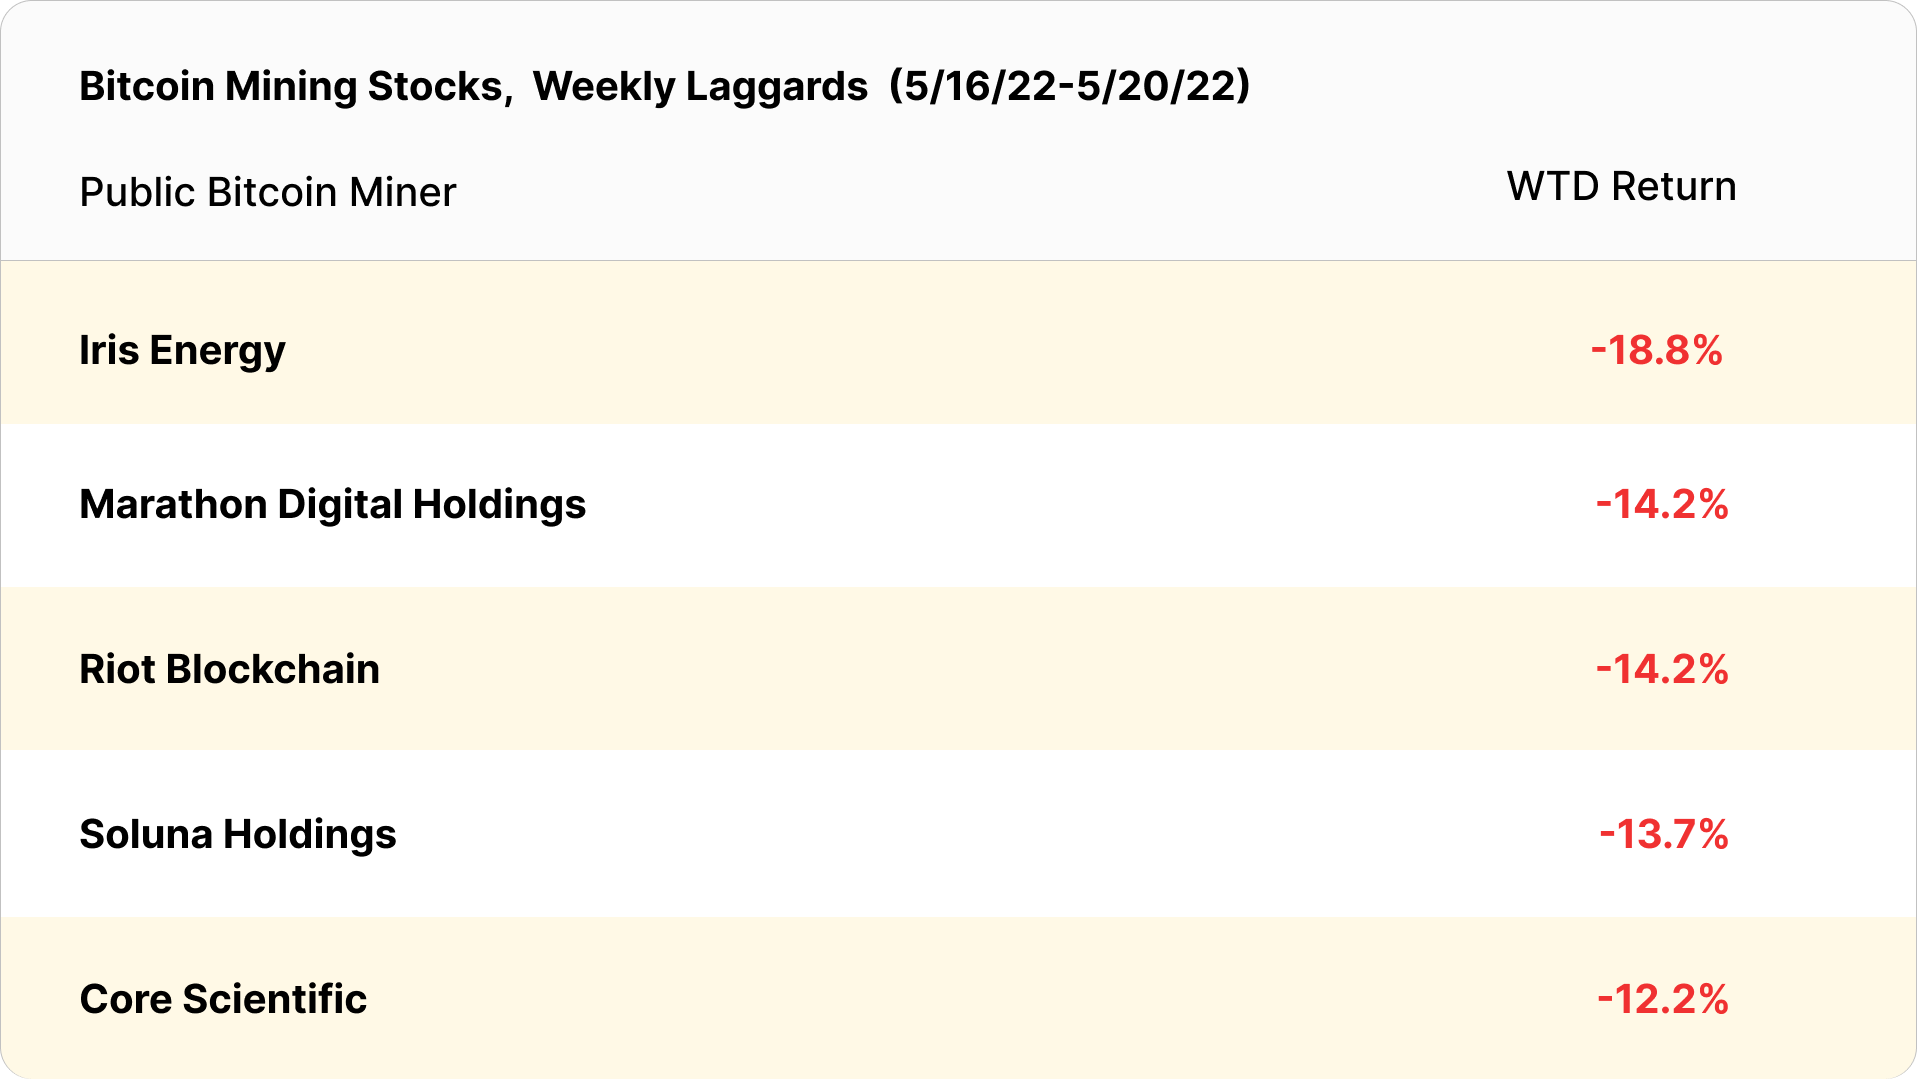 Bitcoin mining stock week laggards (May 16-20, 2022)